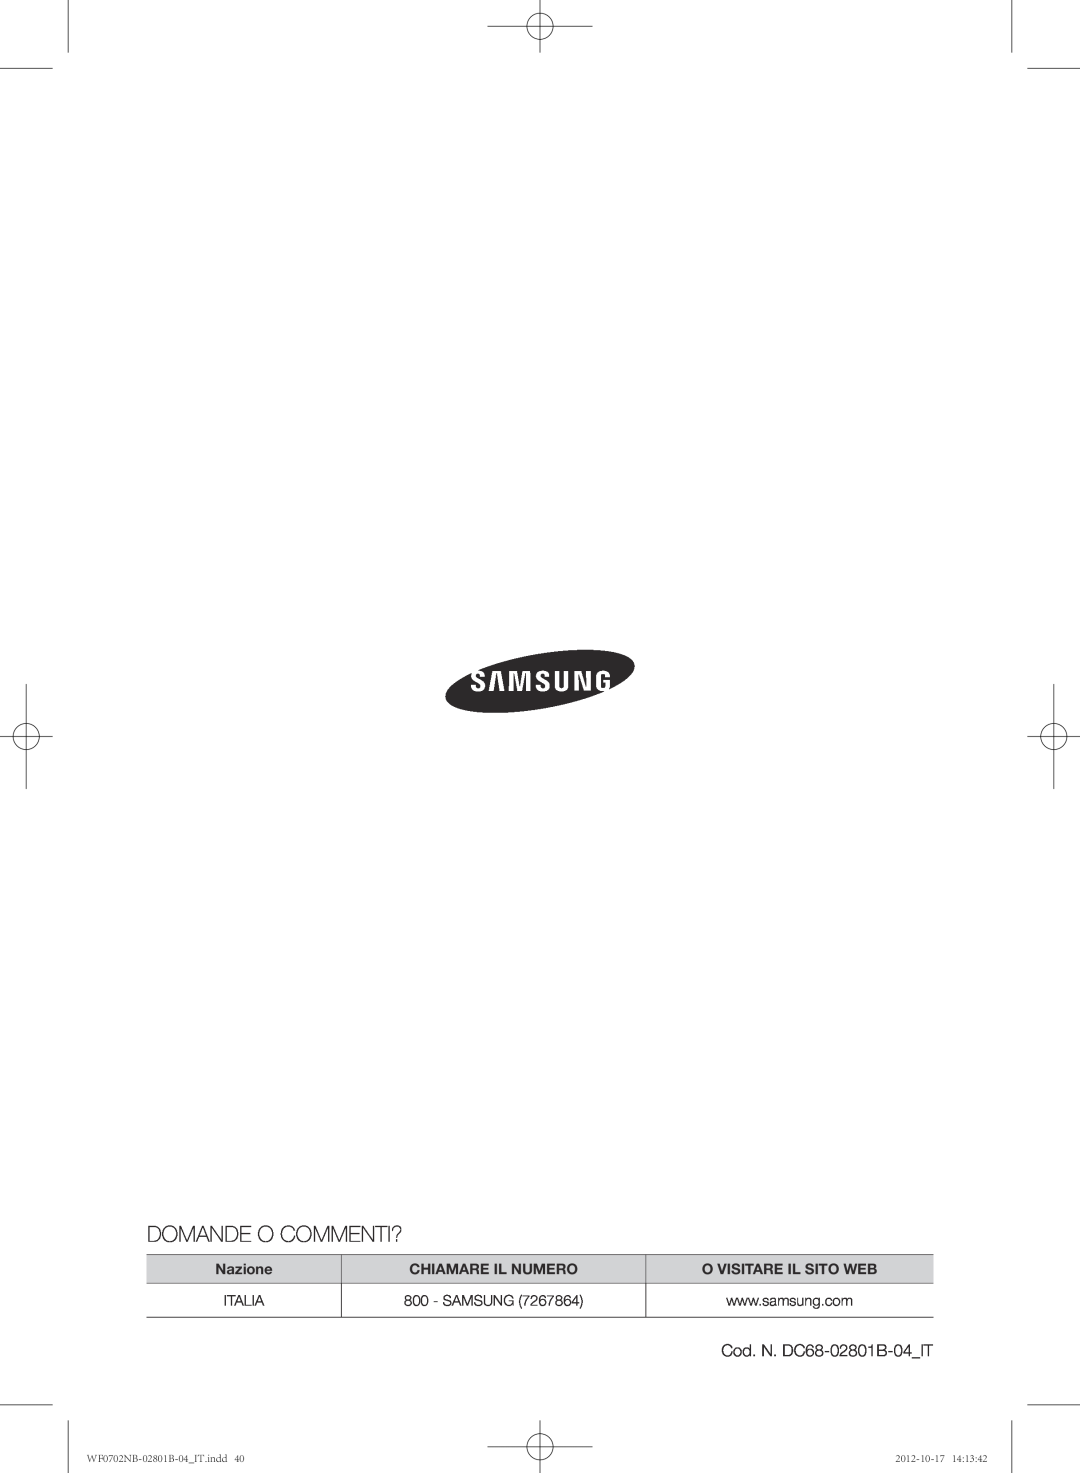 Samsung WF0700NBE/XET Domande O Commenti?, Nazione, Chiamare Il Numero, O Visitare Il Sito Web, Cod. N. DC68-02801B-04IT 